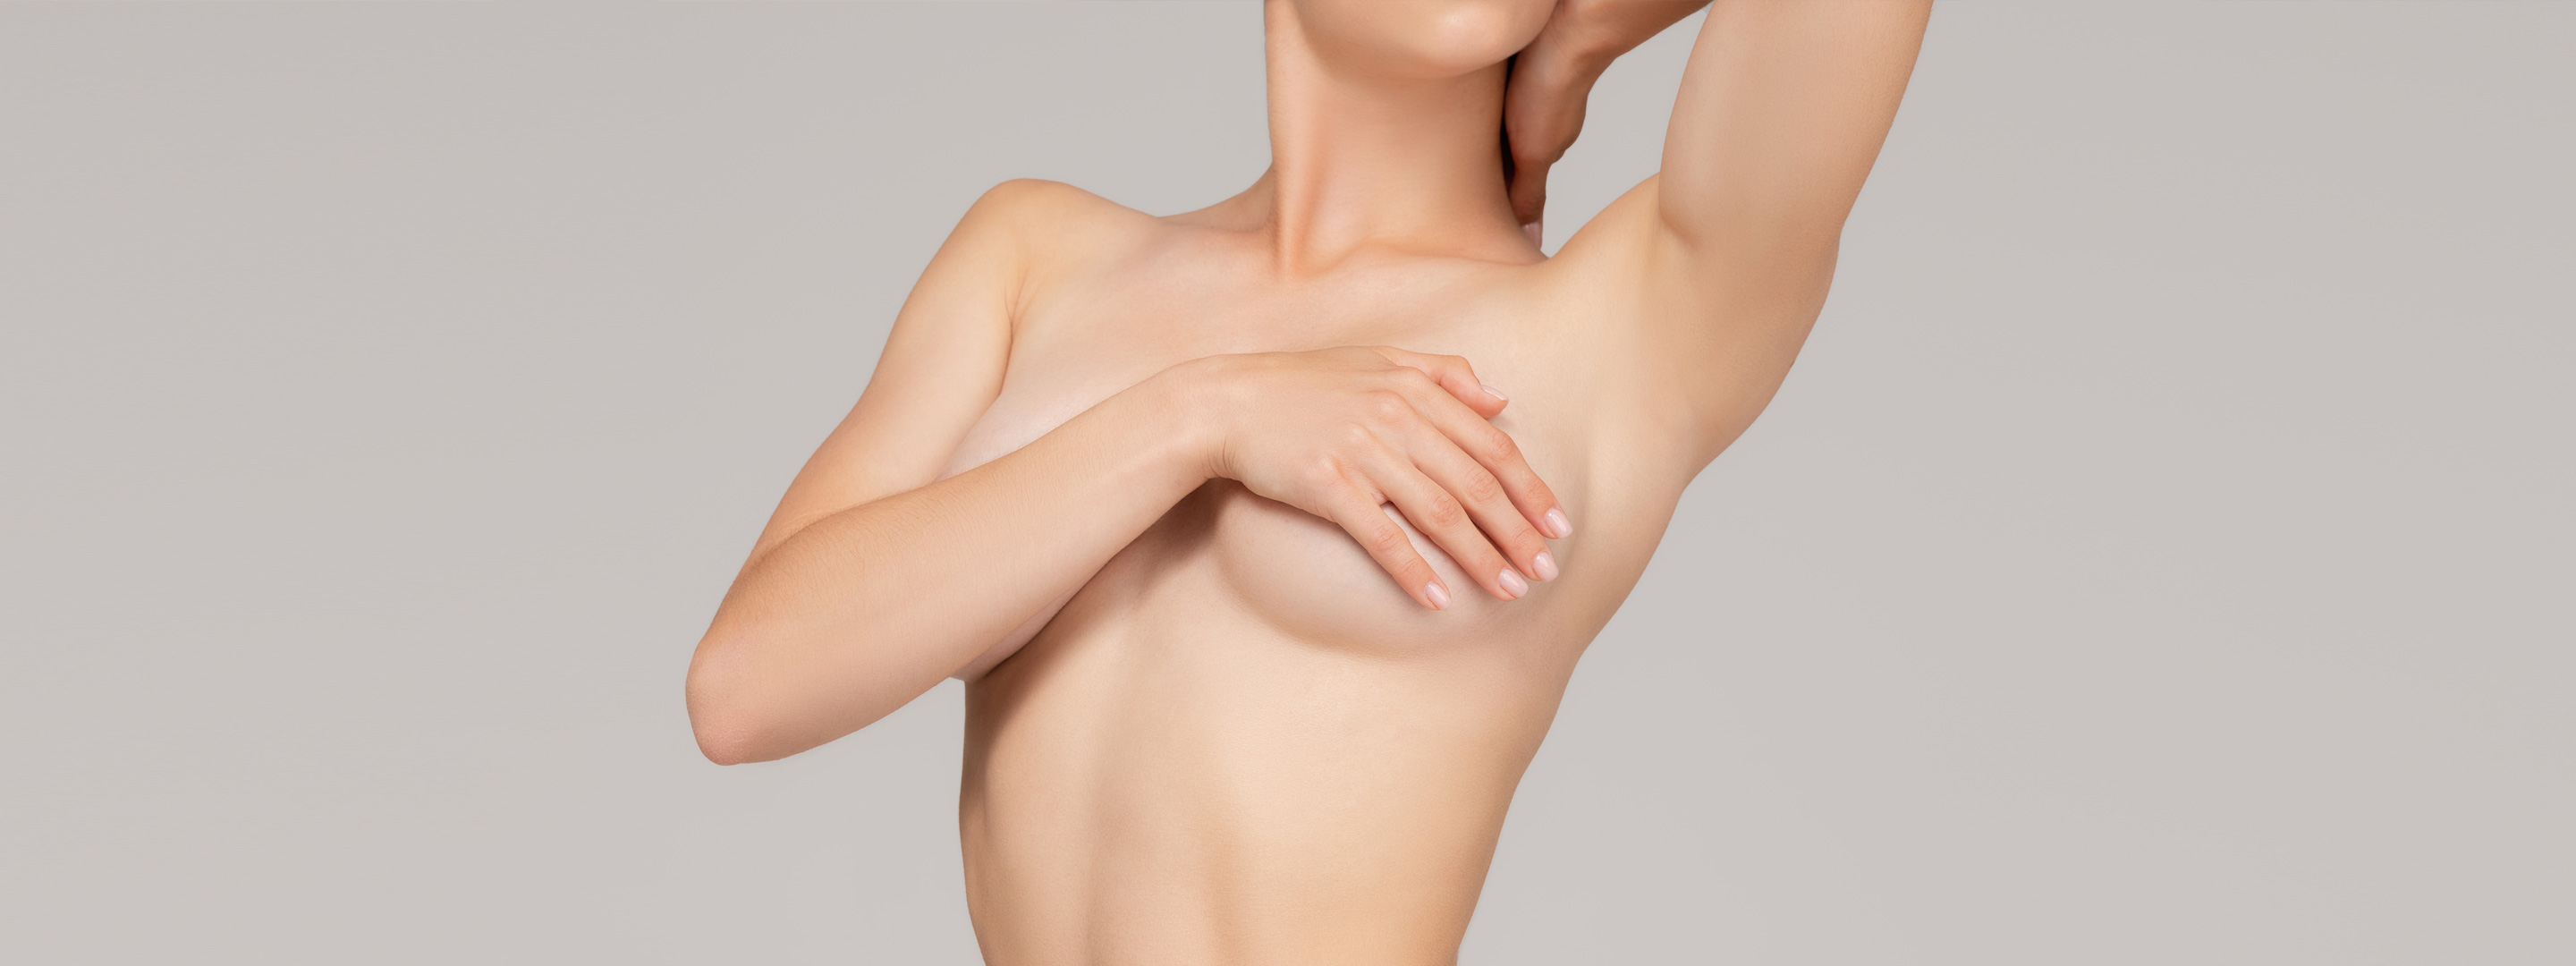 Auf dem Titelbild zu sehen ist ein Ausschnitt eines Fotos von einer schlanken, plastisch-ästhetischen und gesunden Frau, die ihre Brüste verdeckt, nach der Brustvergrößerung beziehungsweise Mammaaugmentation.